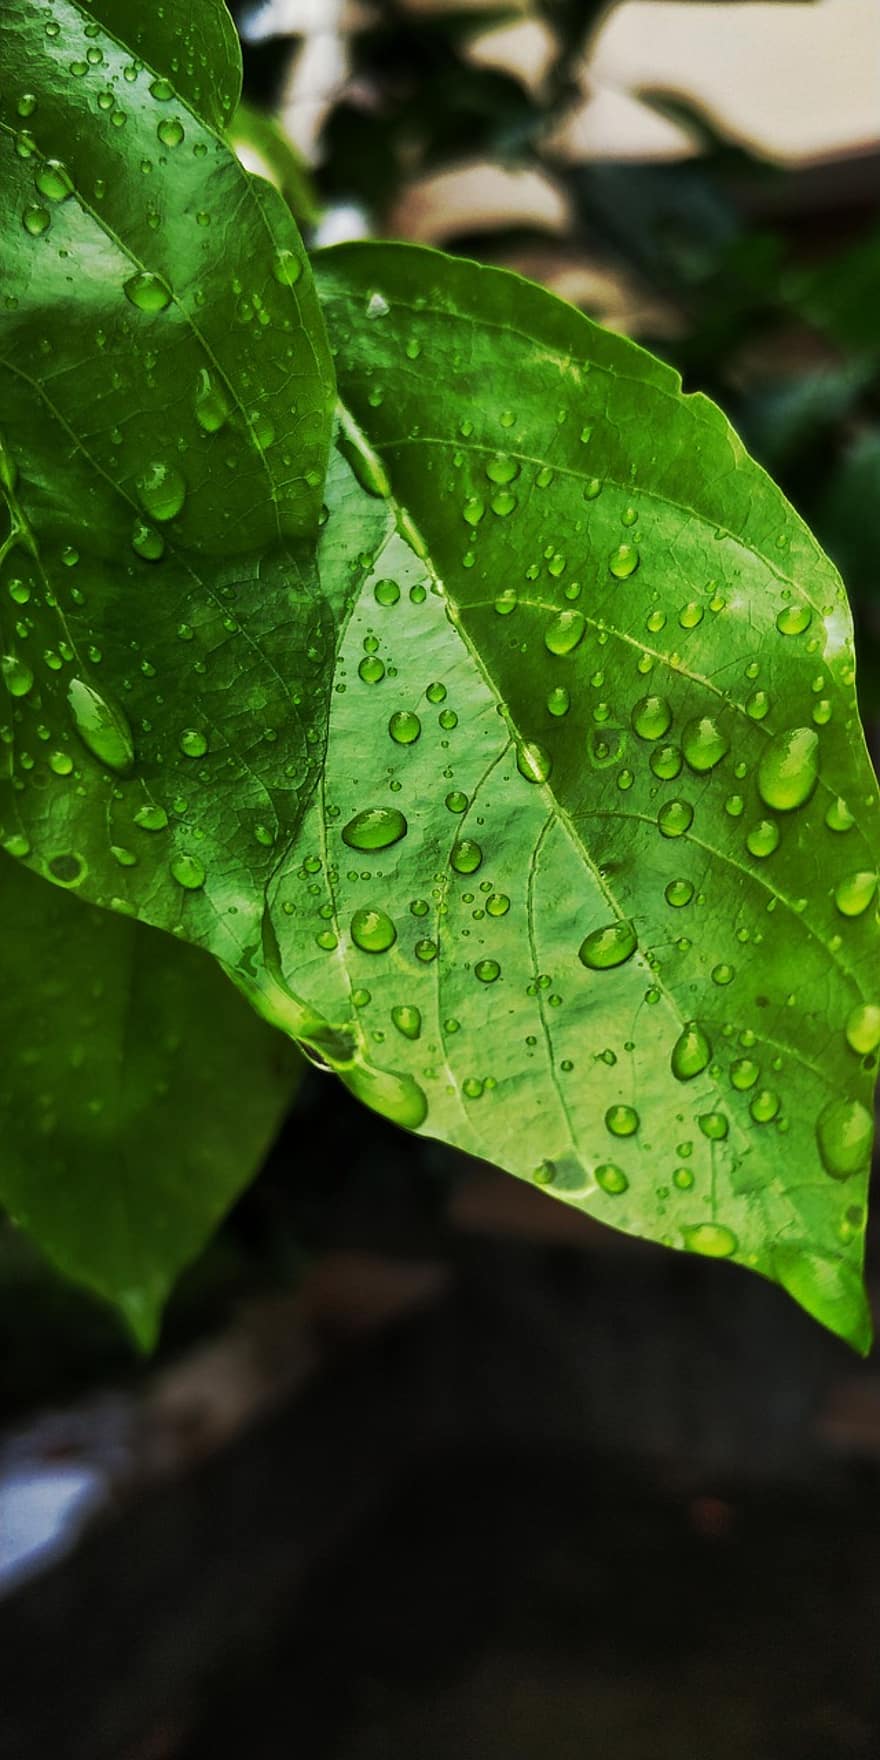 eső, levél növényen, zöld, természet, növény, levelek, harmat, víz, nedves, esőcsepp, tavaszi